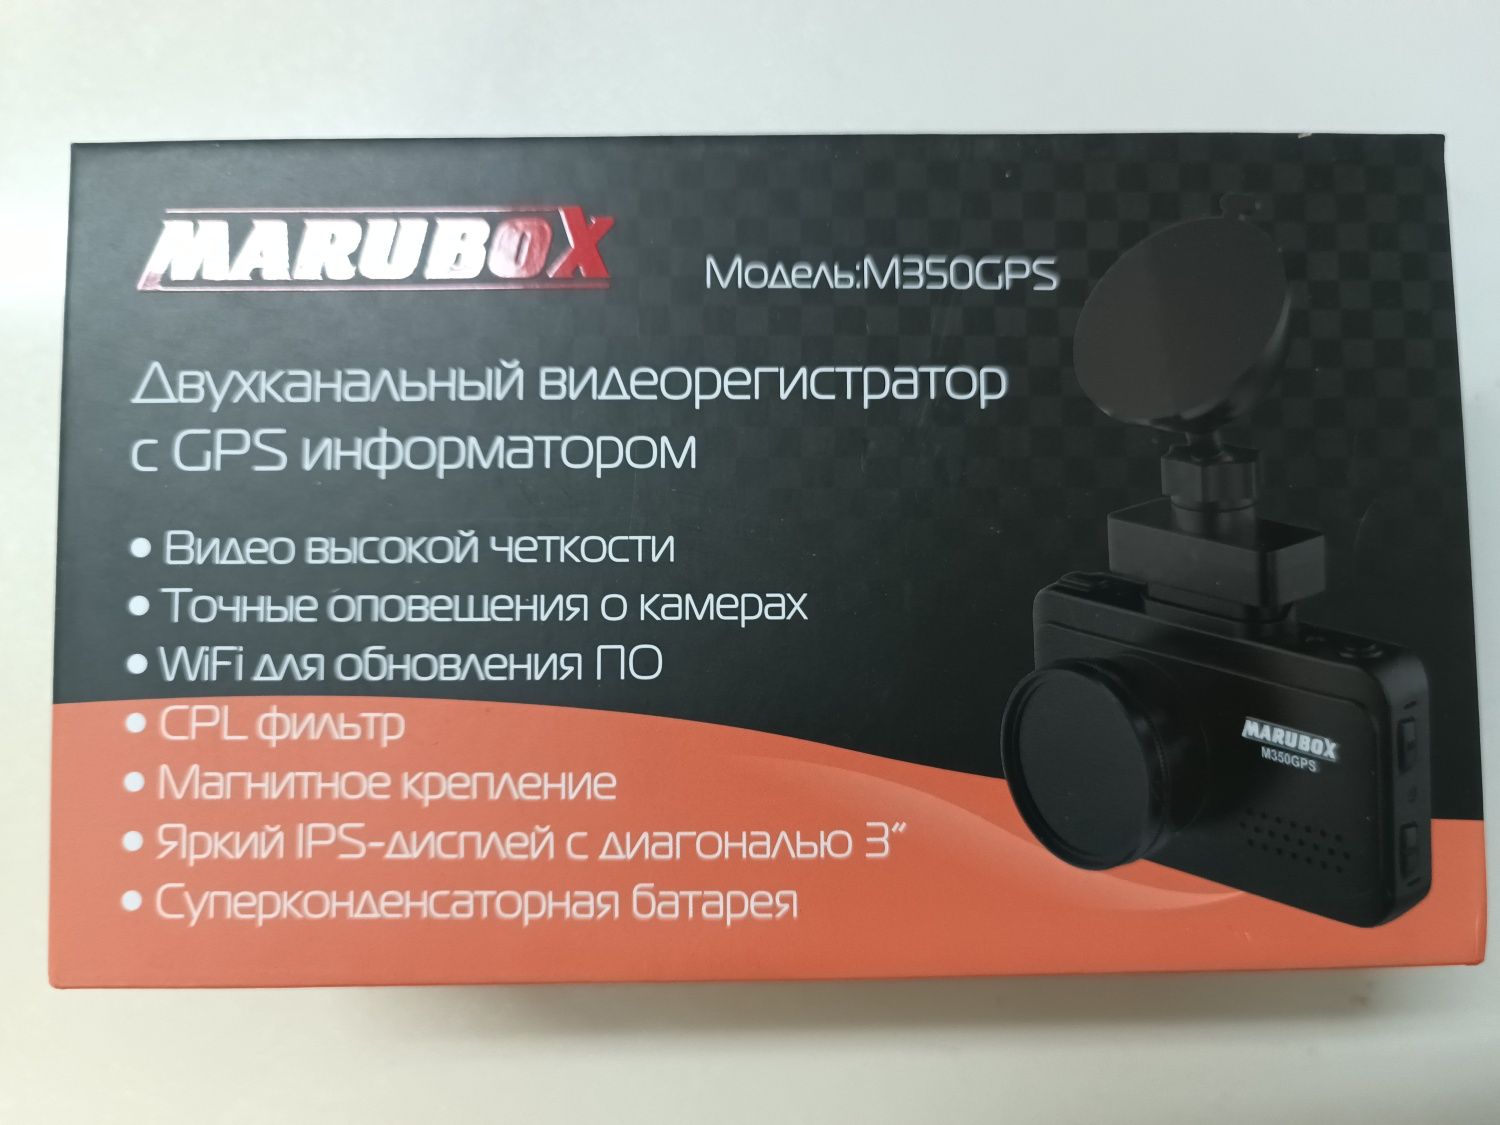 Видеорегистратор Marubox M350GPS б/у в отличном состоянии